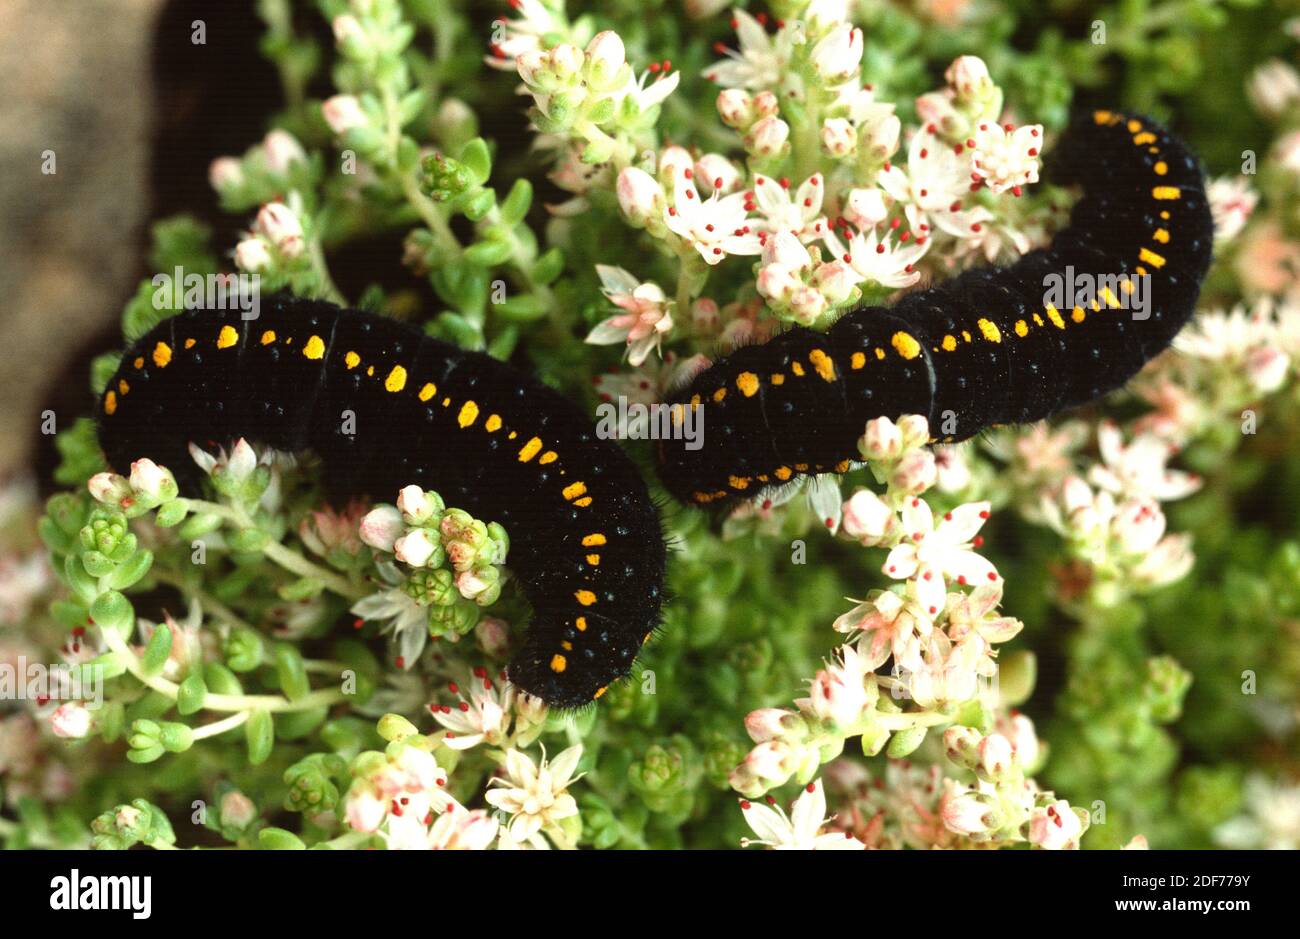 Mountain Apollo (Parnassius apollo) is a butterfly native to Europe mountains. Caterpillar on a feeding plant (Sedum sp. ). Stock Photo